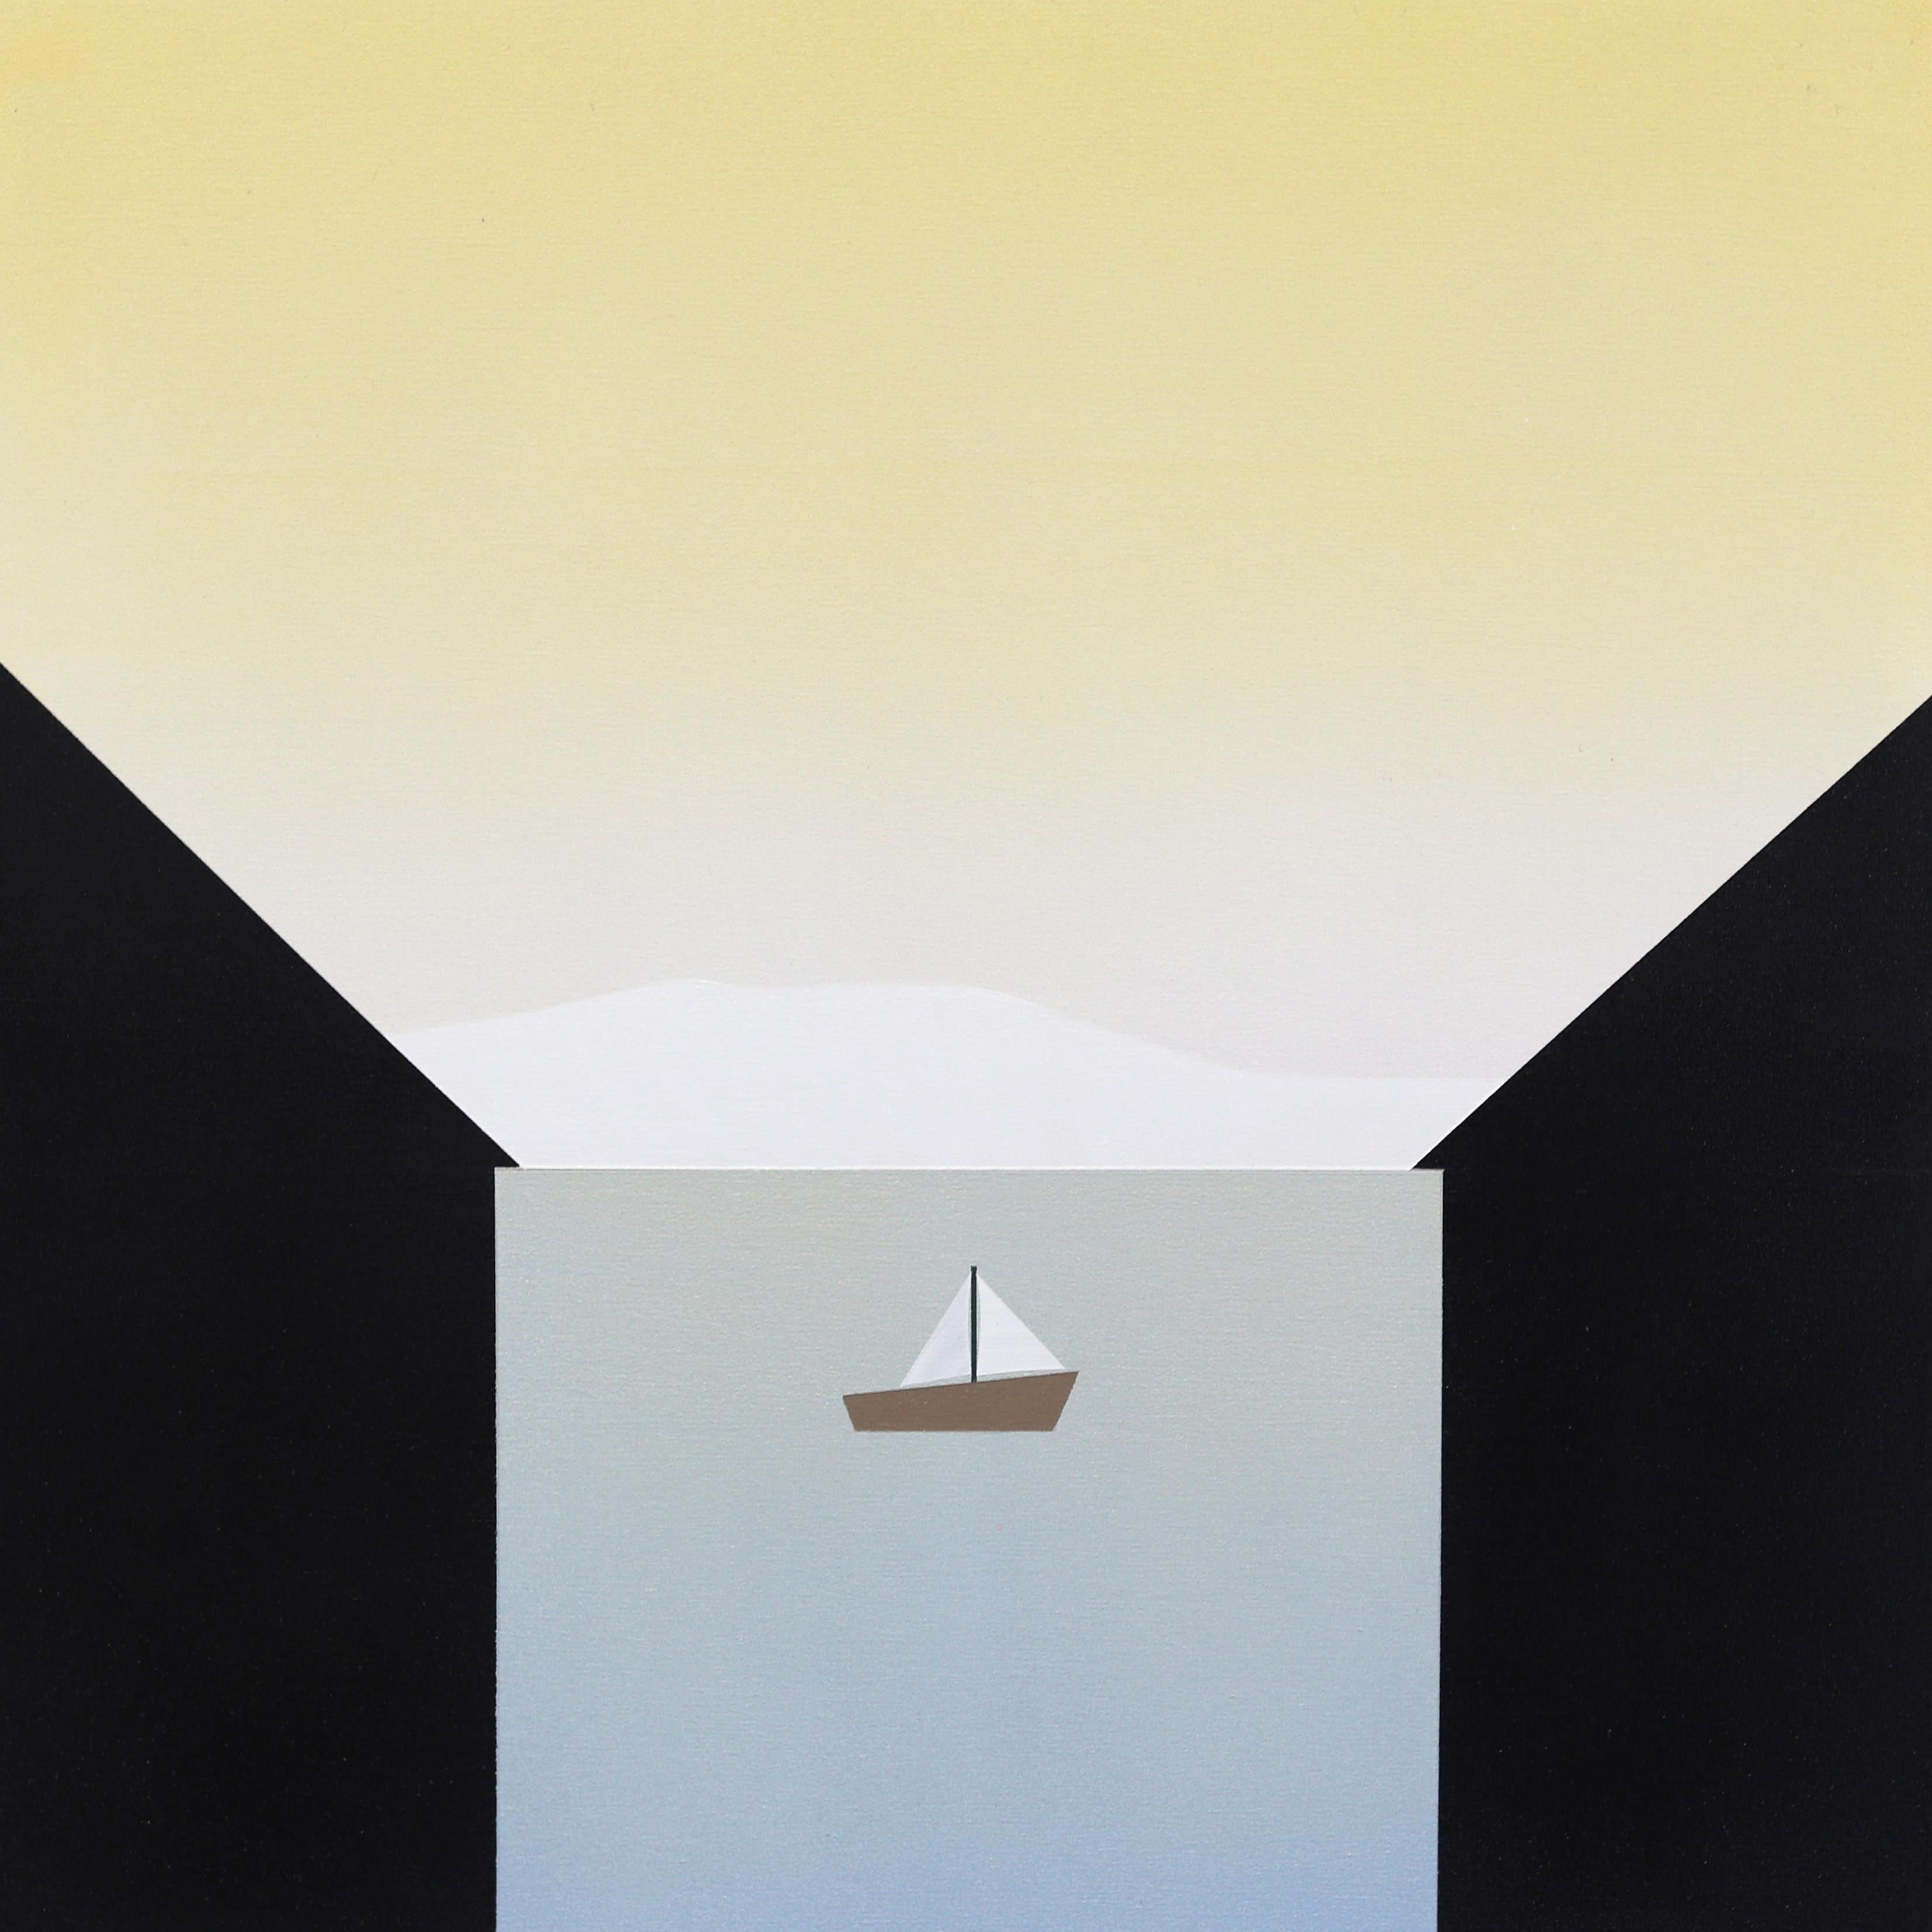 Mike Gough Landscape Painting – Between - Minimalistische Scenic Landscape Gemälde Boot auf Wasser